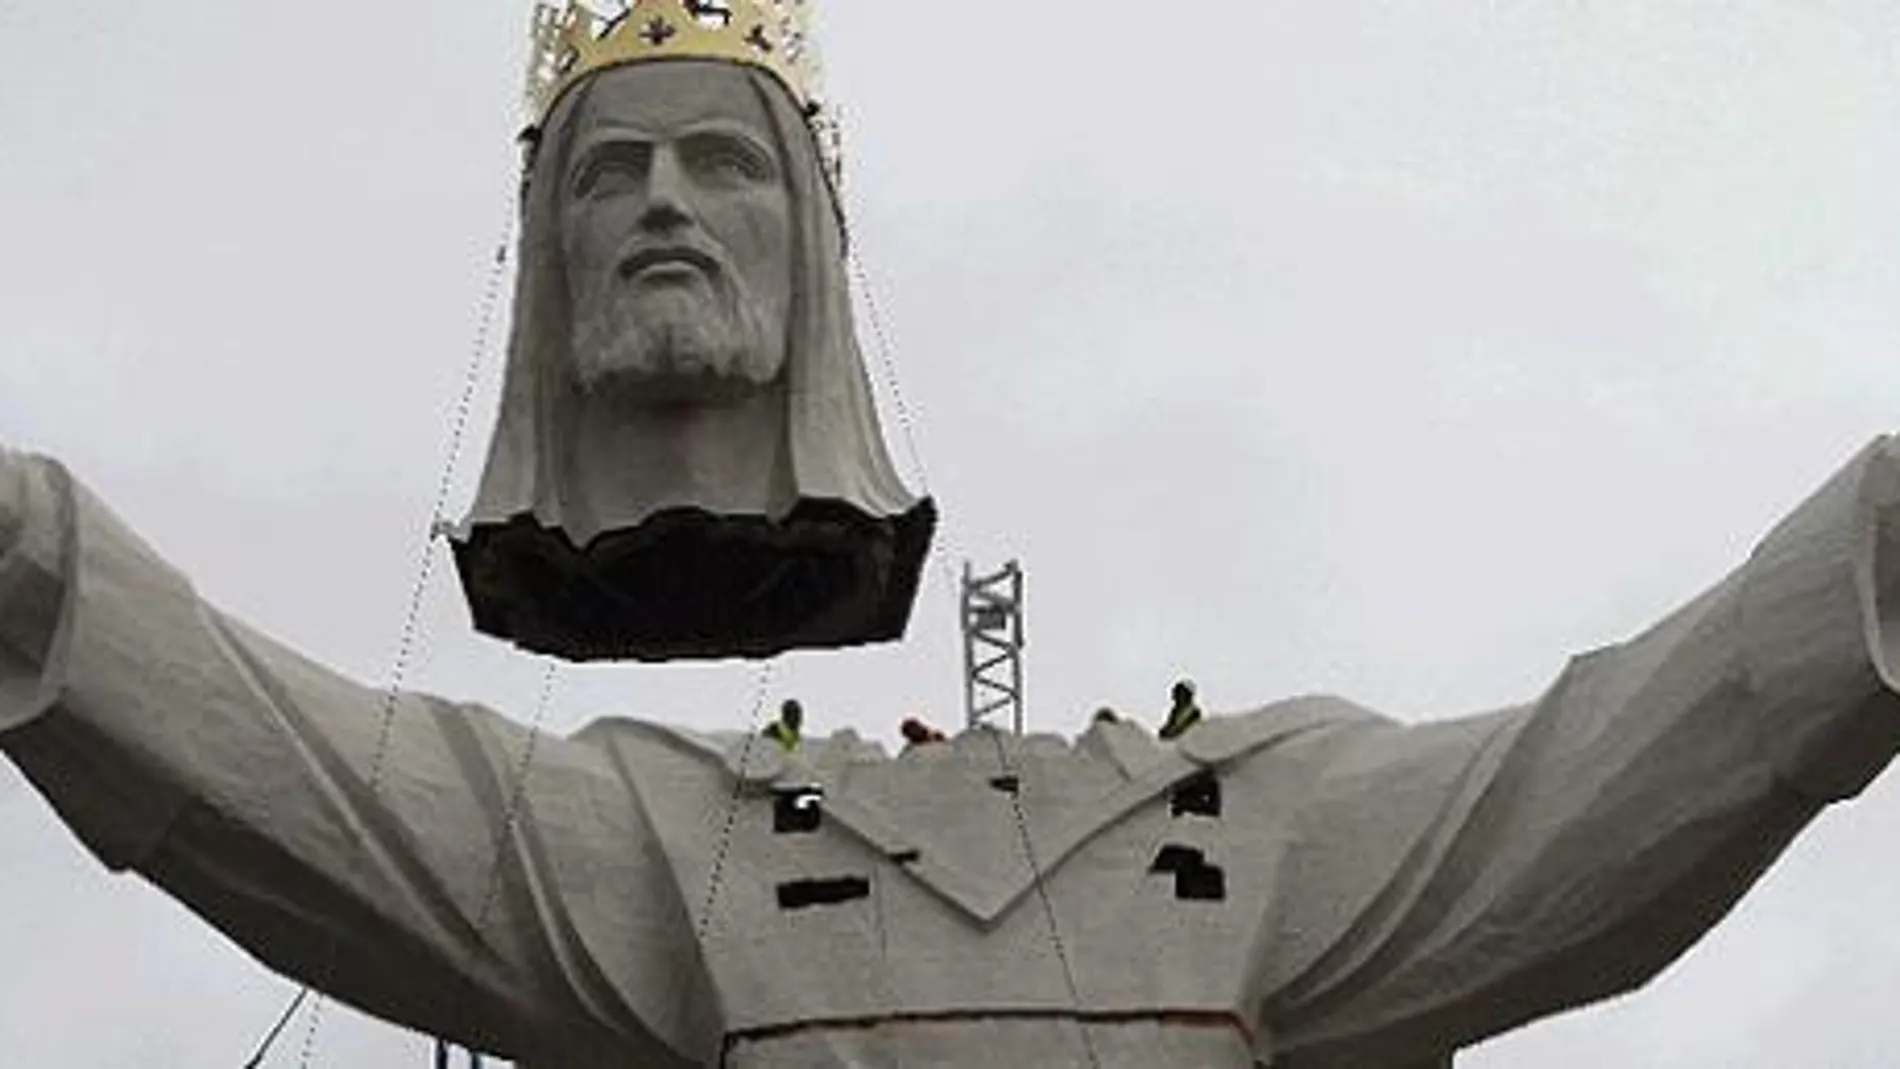 Polonia levanta la estatua de Cristo más grande del mundo